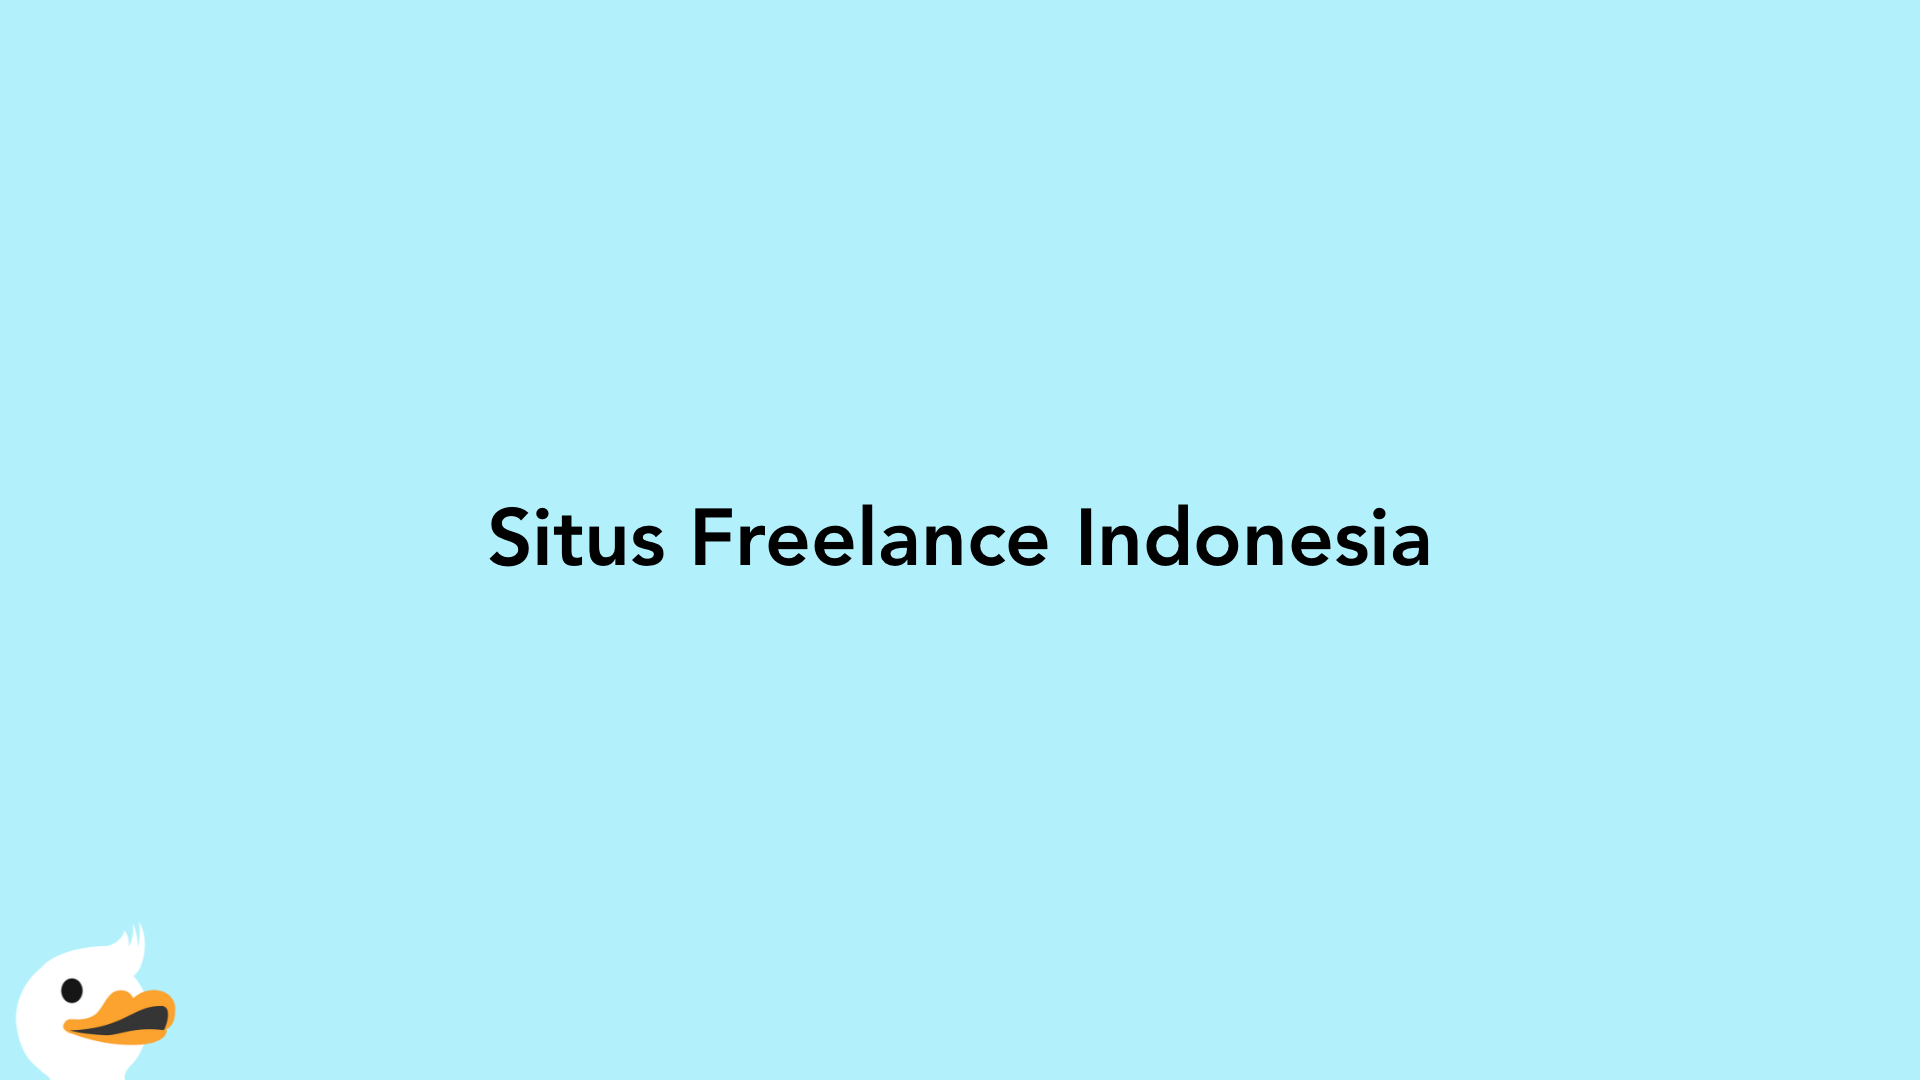 Situs Freelance Indonesia